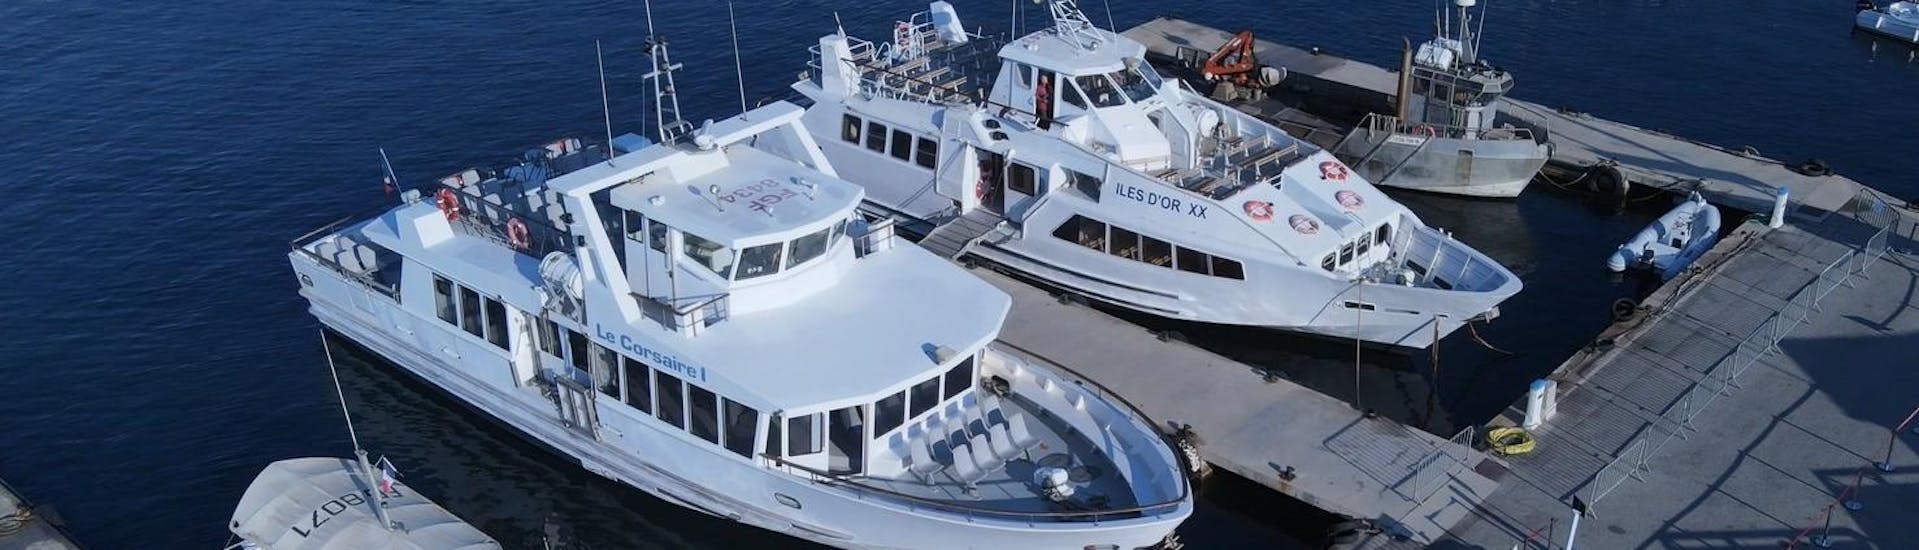 Due delle barche utilizzate da Vedettes Îles d'Or & Le Corsaire durante le loro gite in barca.